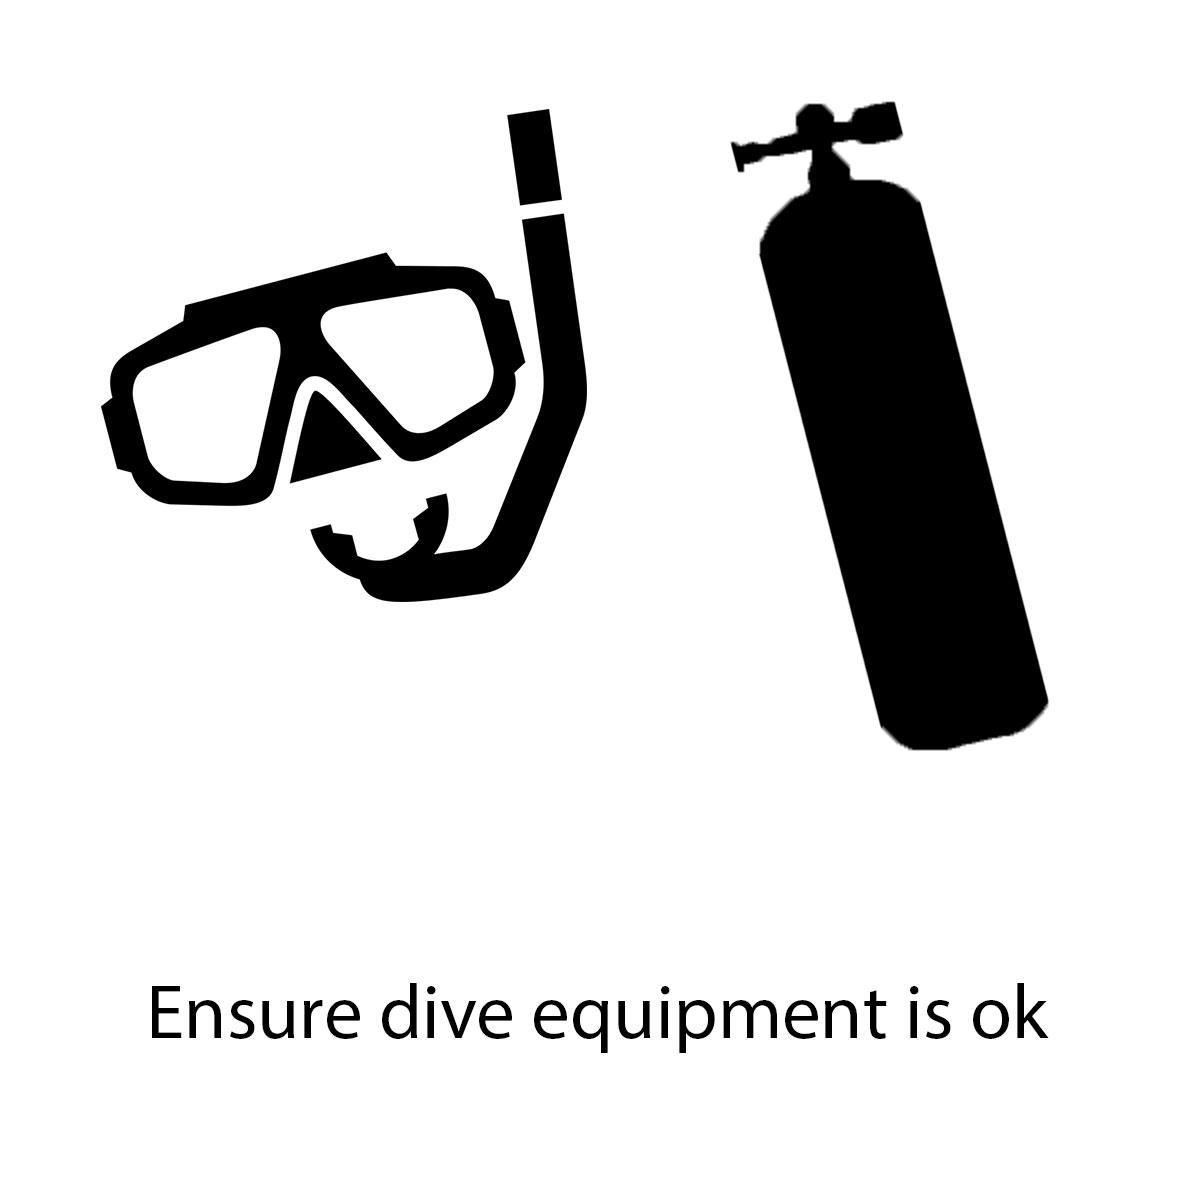 ensure-equipment-is-ok.jpg